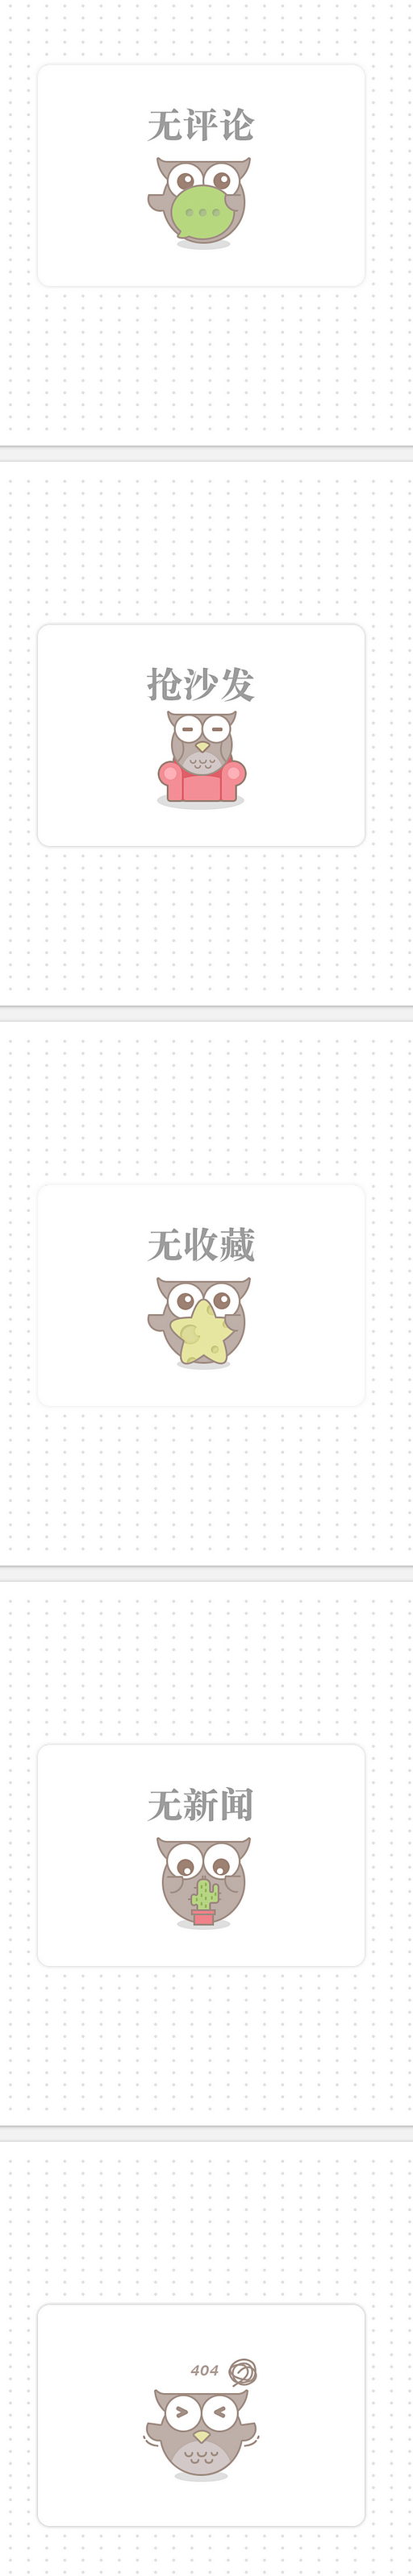 空白页设计-UI中国-专业界面交互设计平...